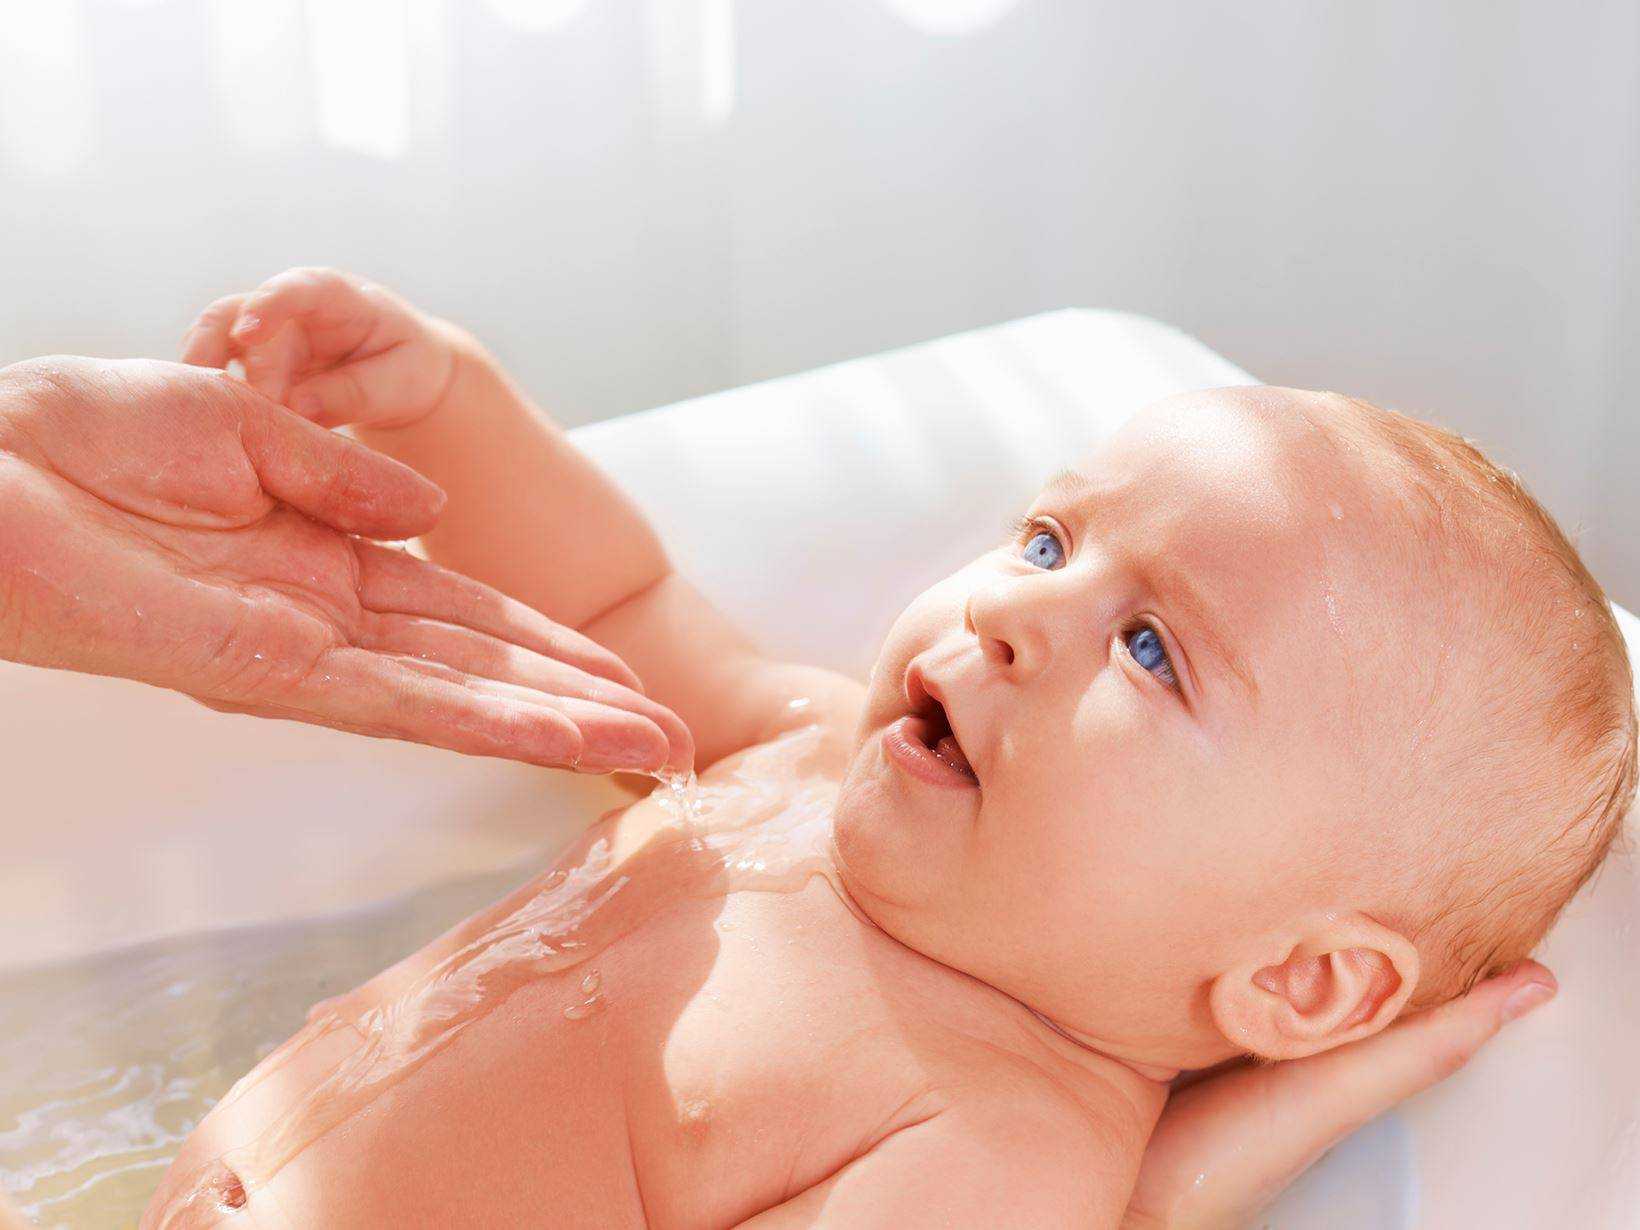 Температура воды и воздуха для купания новорожденного ребенка